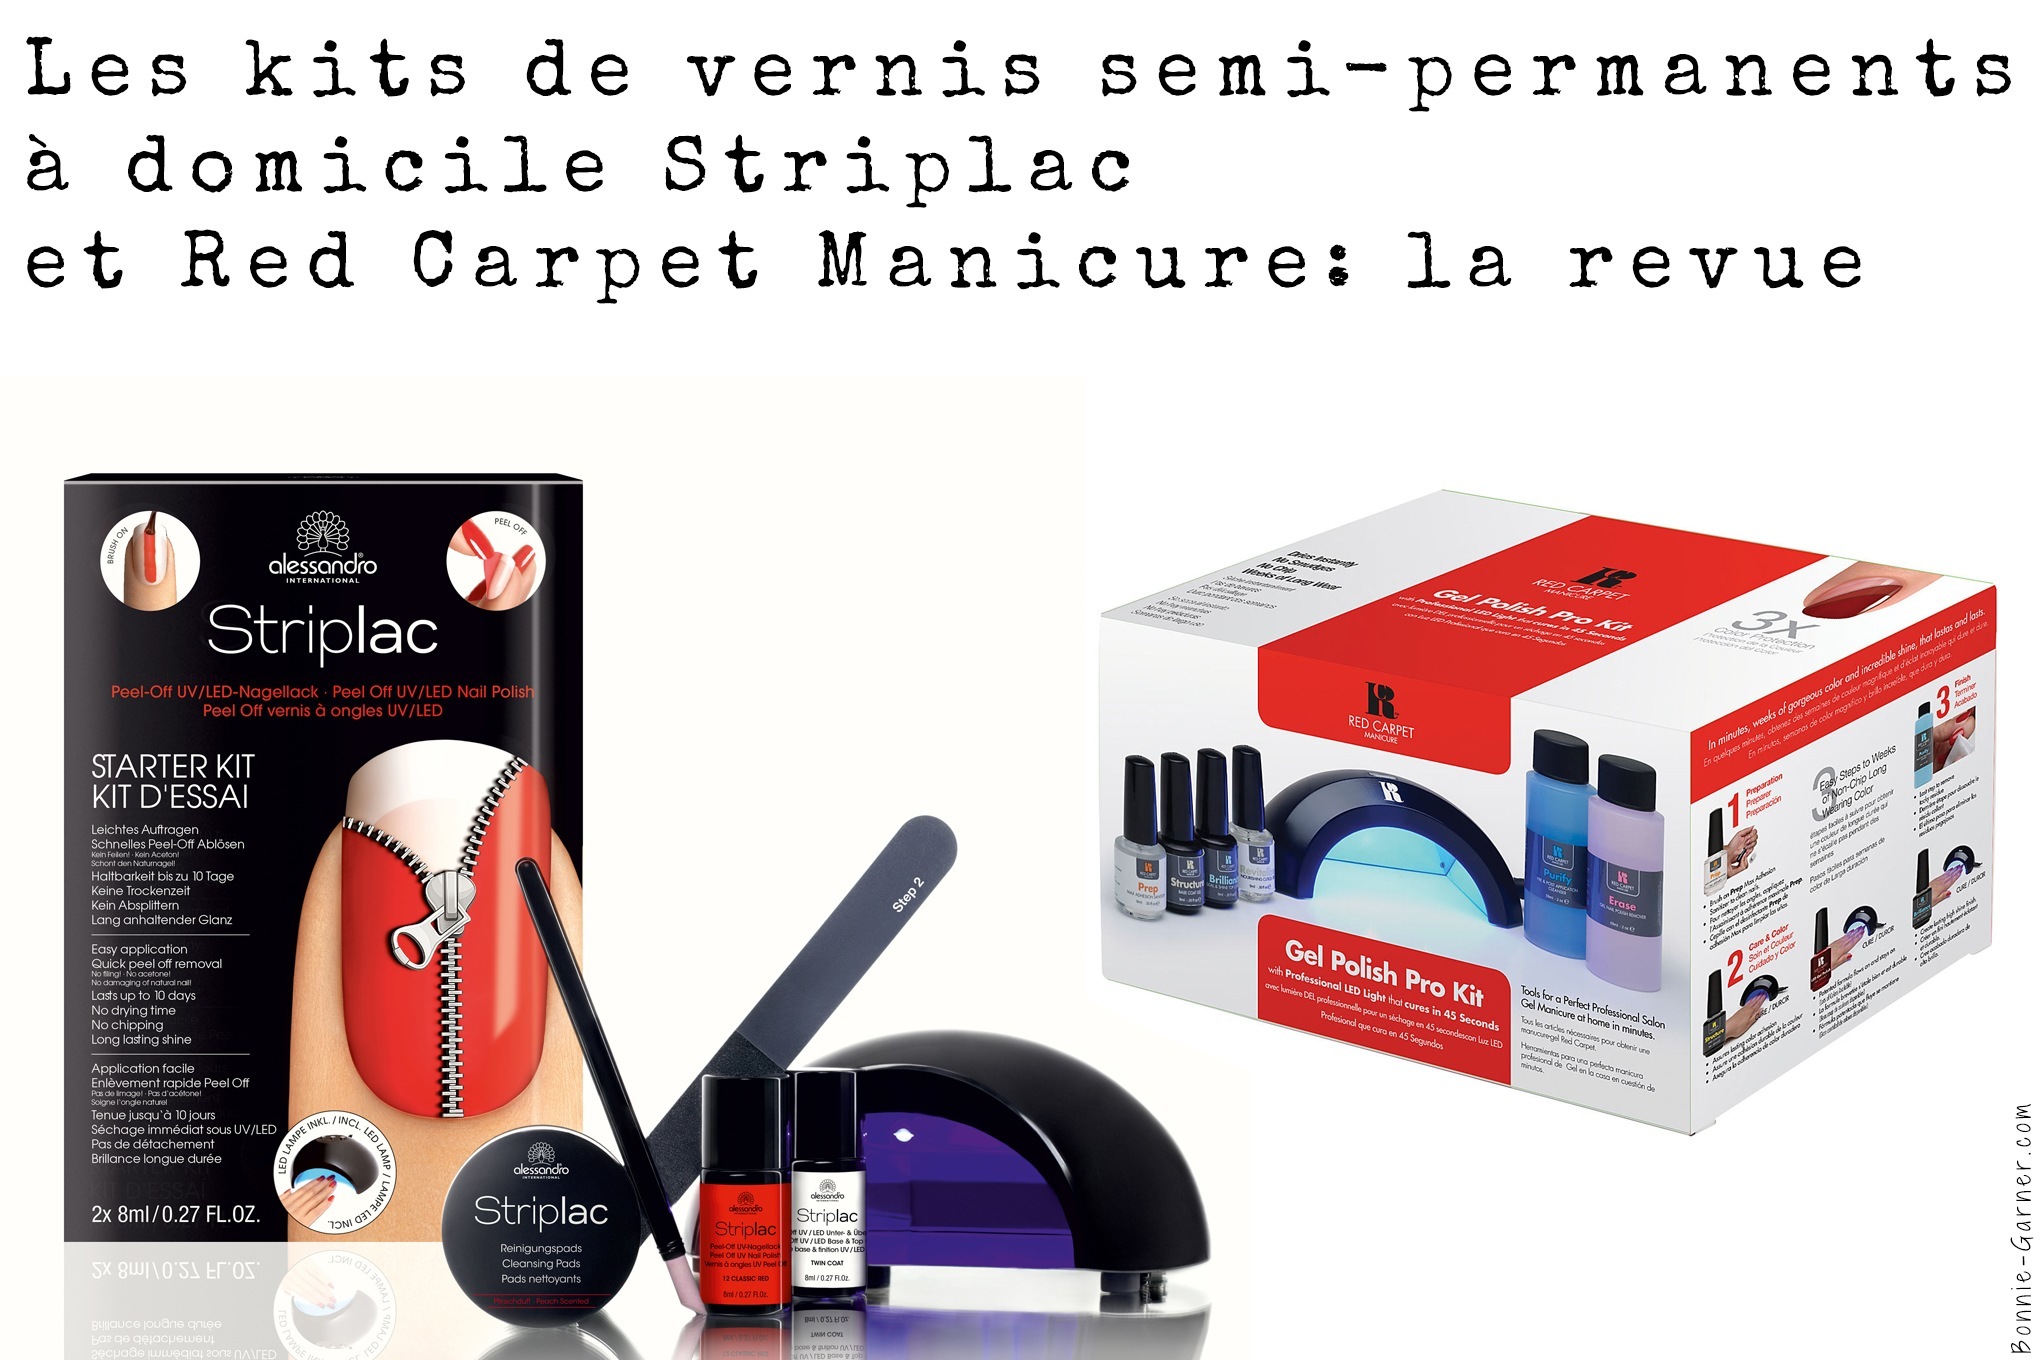 Les kits de vernis semi-permanents à domicile Striplac et Red Carpet Manicure: la revue